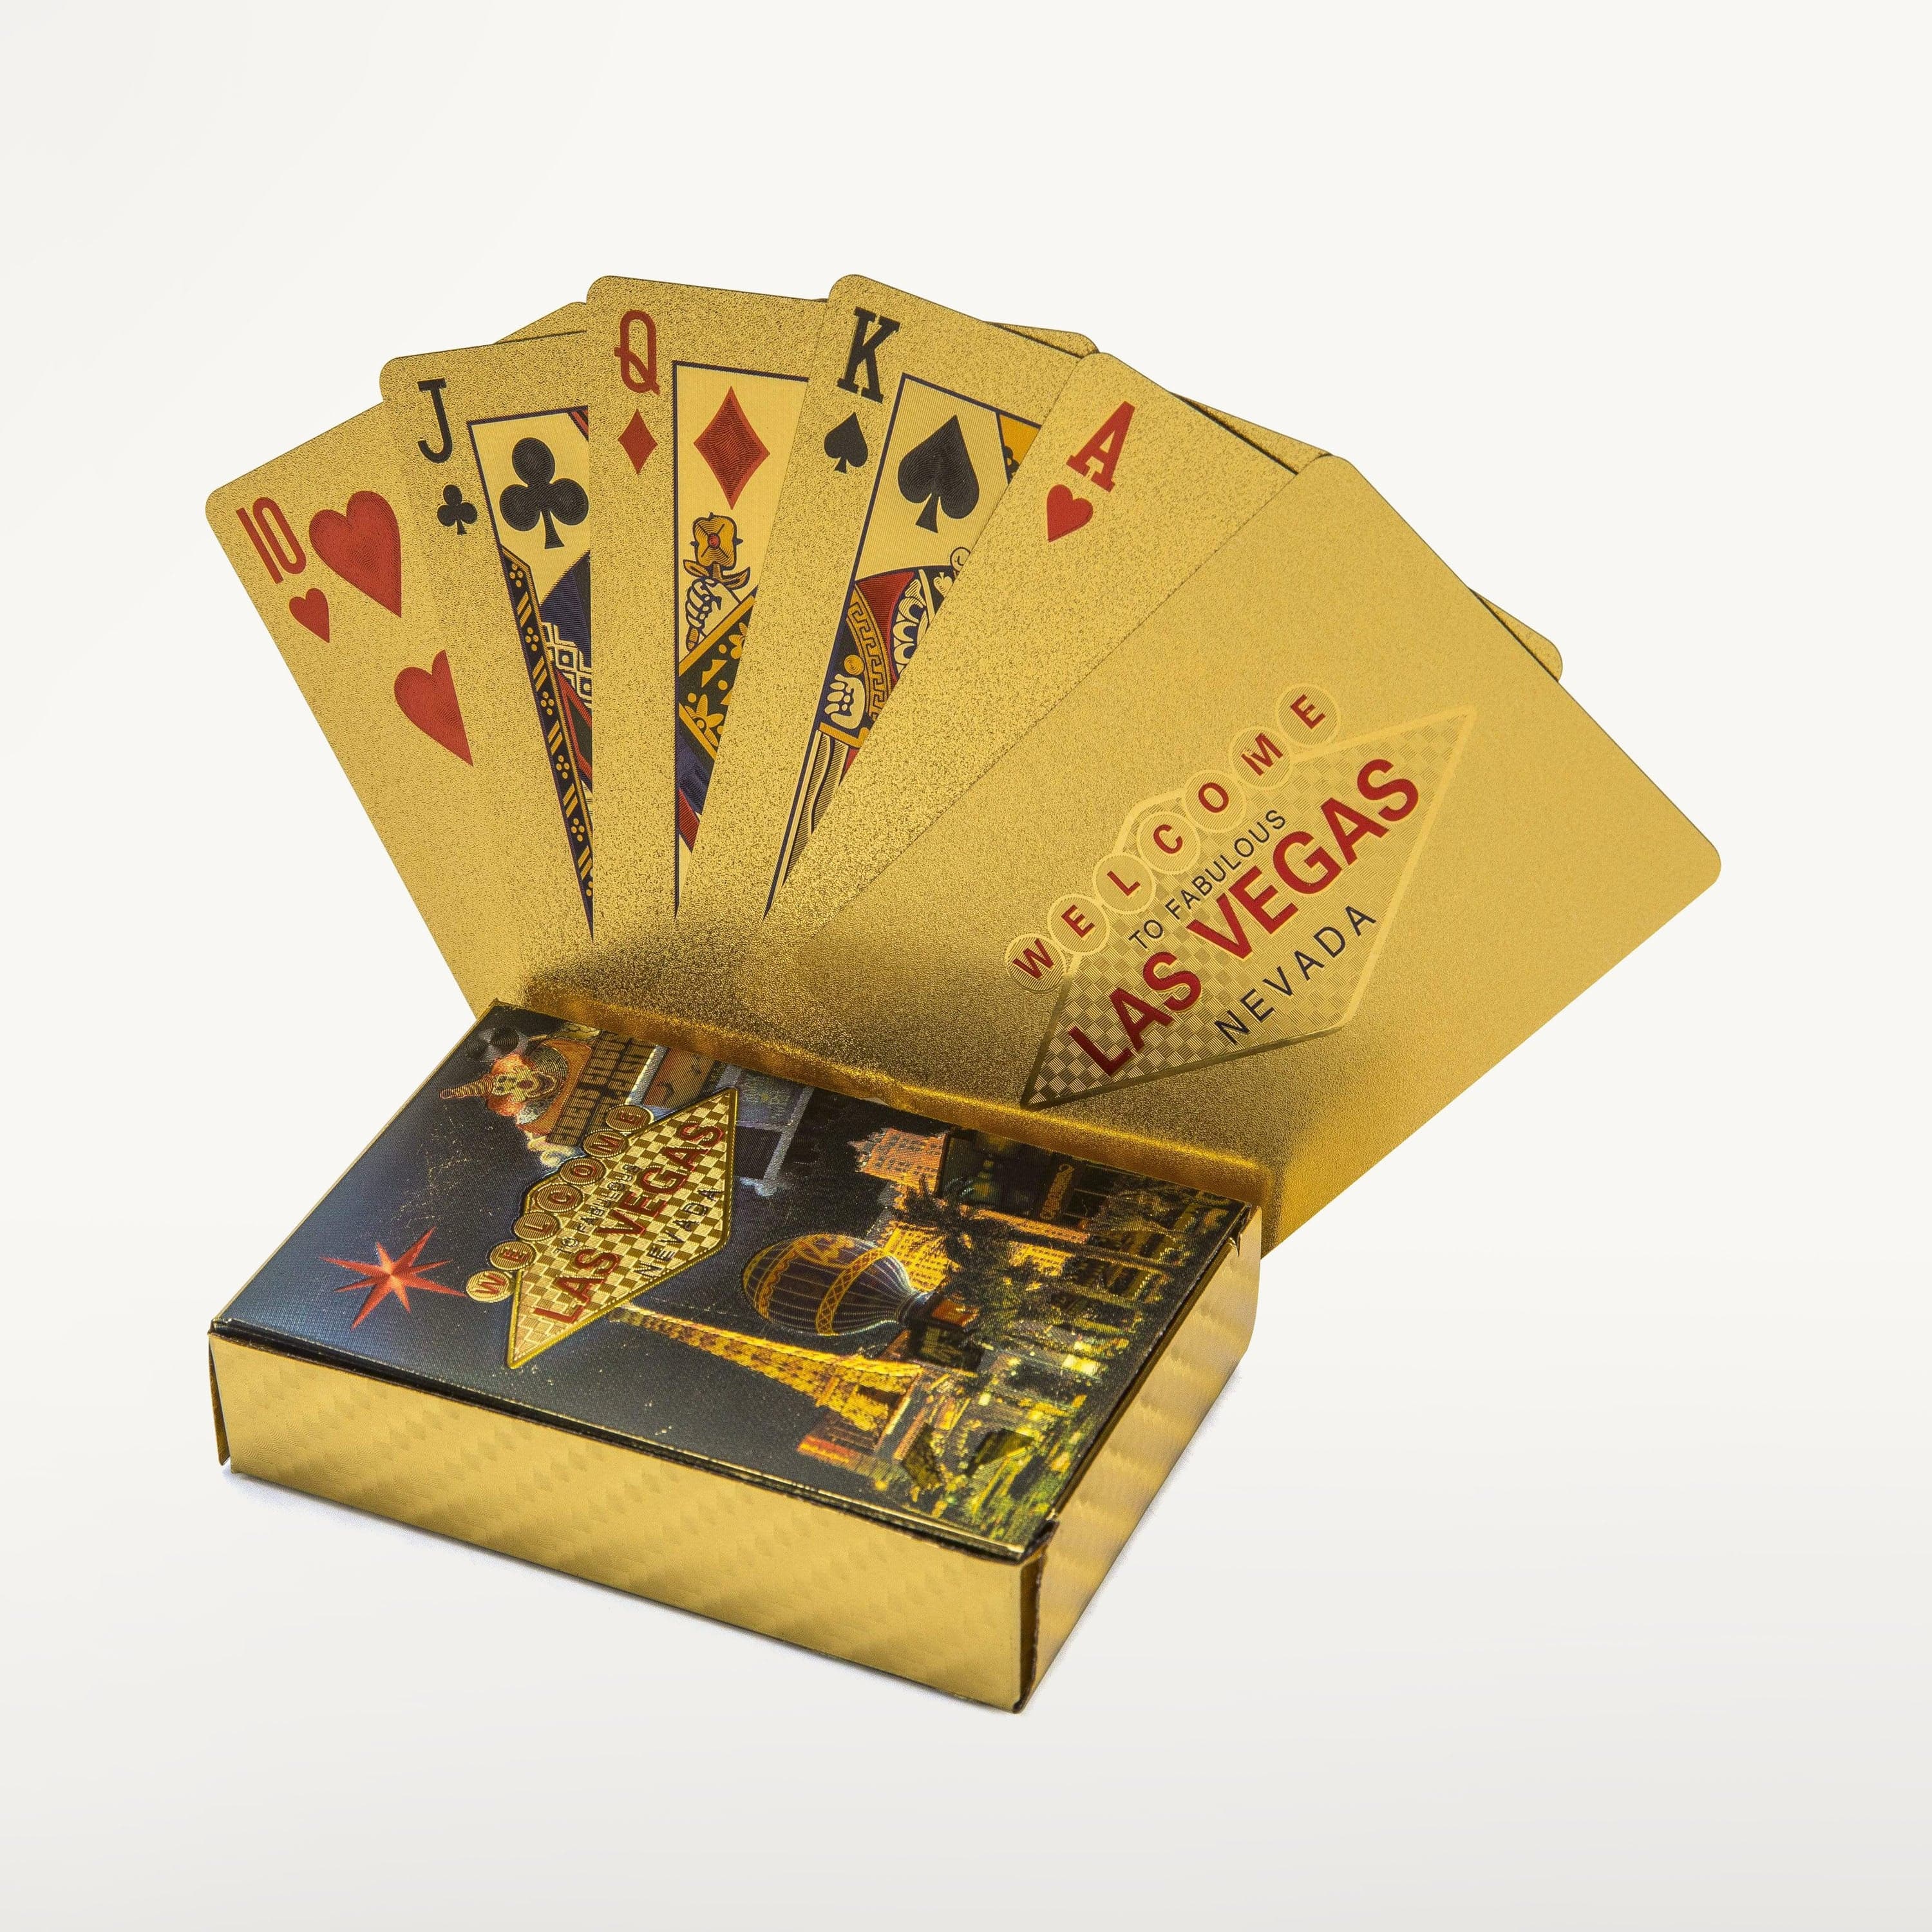 Vegas Playing Cards